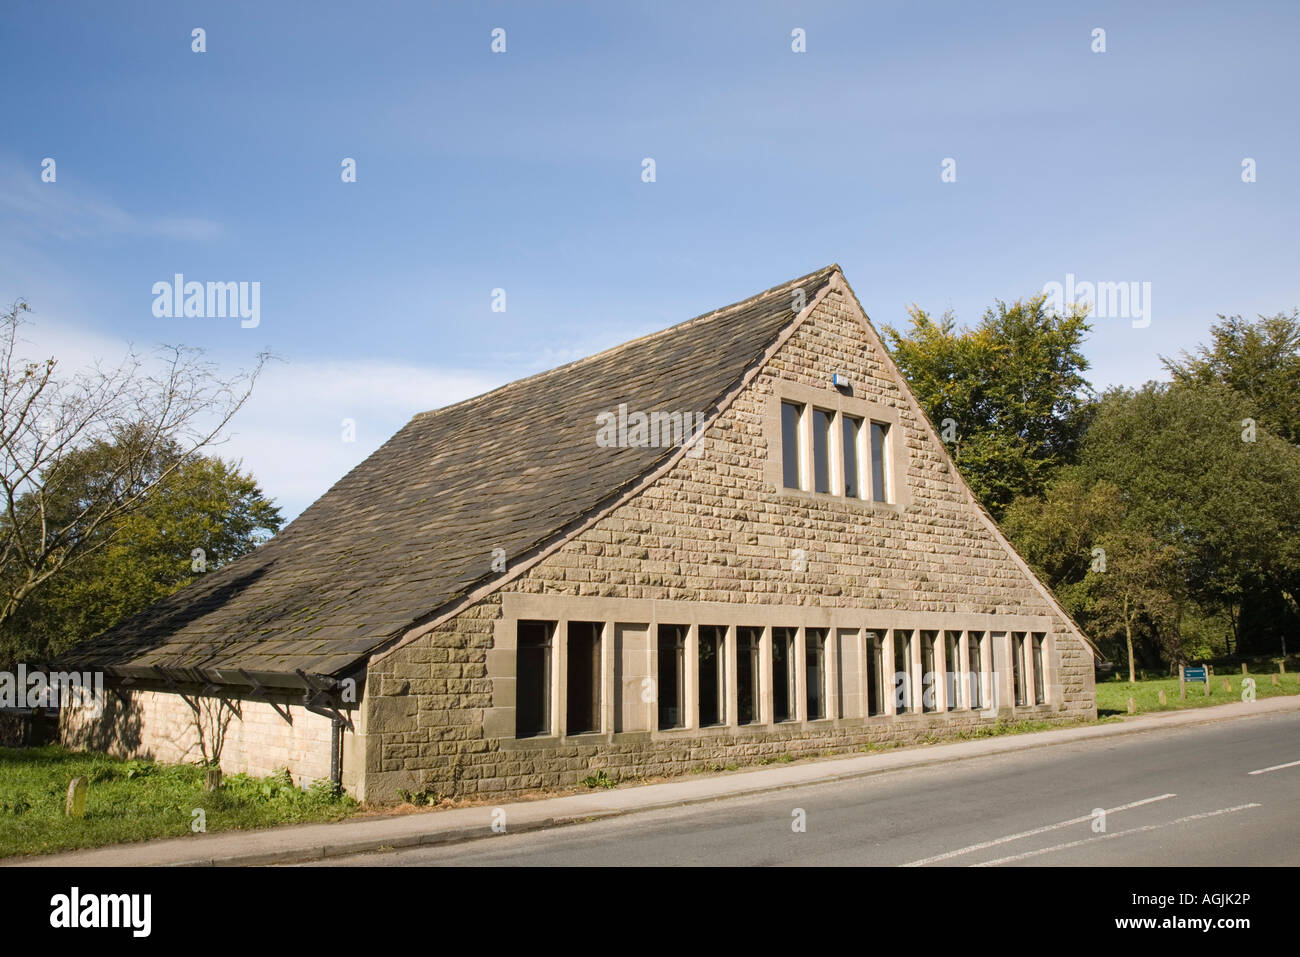 Hebel-Park Rivington Lancashire England UK. "Großes Haus" oder niedriger Scheune skandinavischen Design Zehntscheune Stockfoto